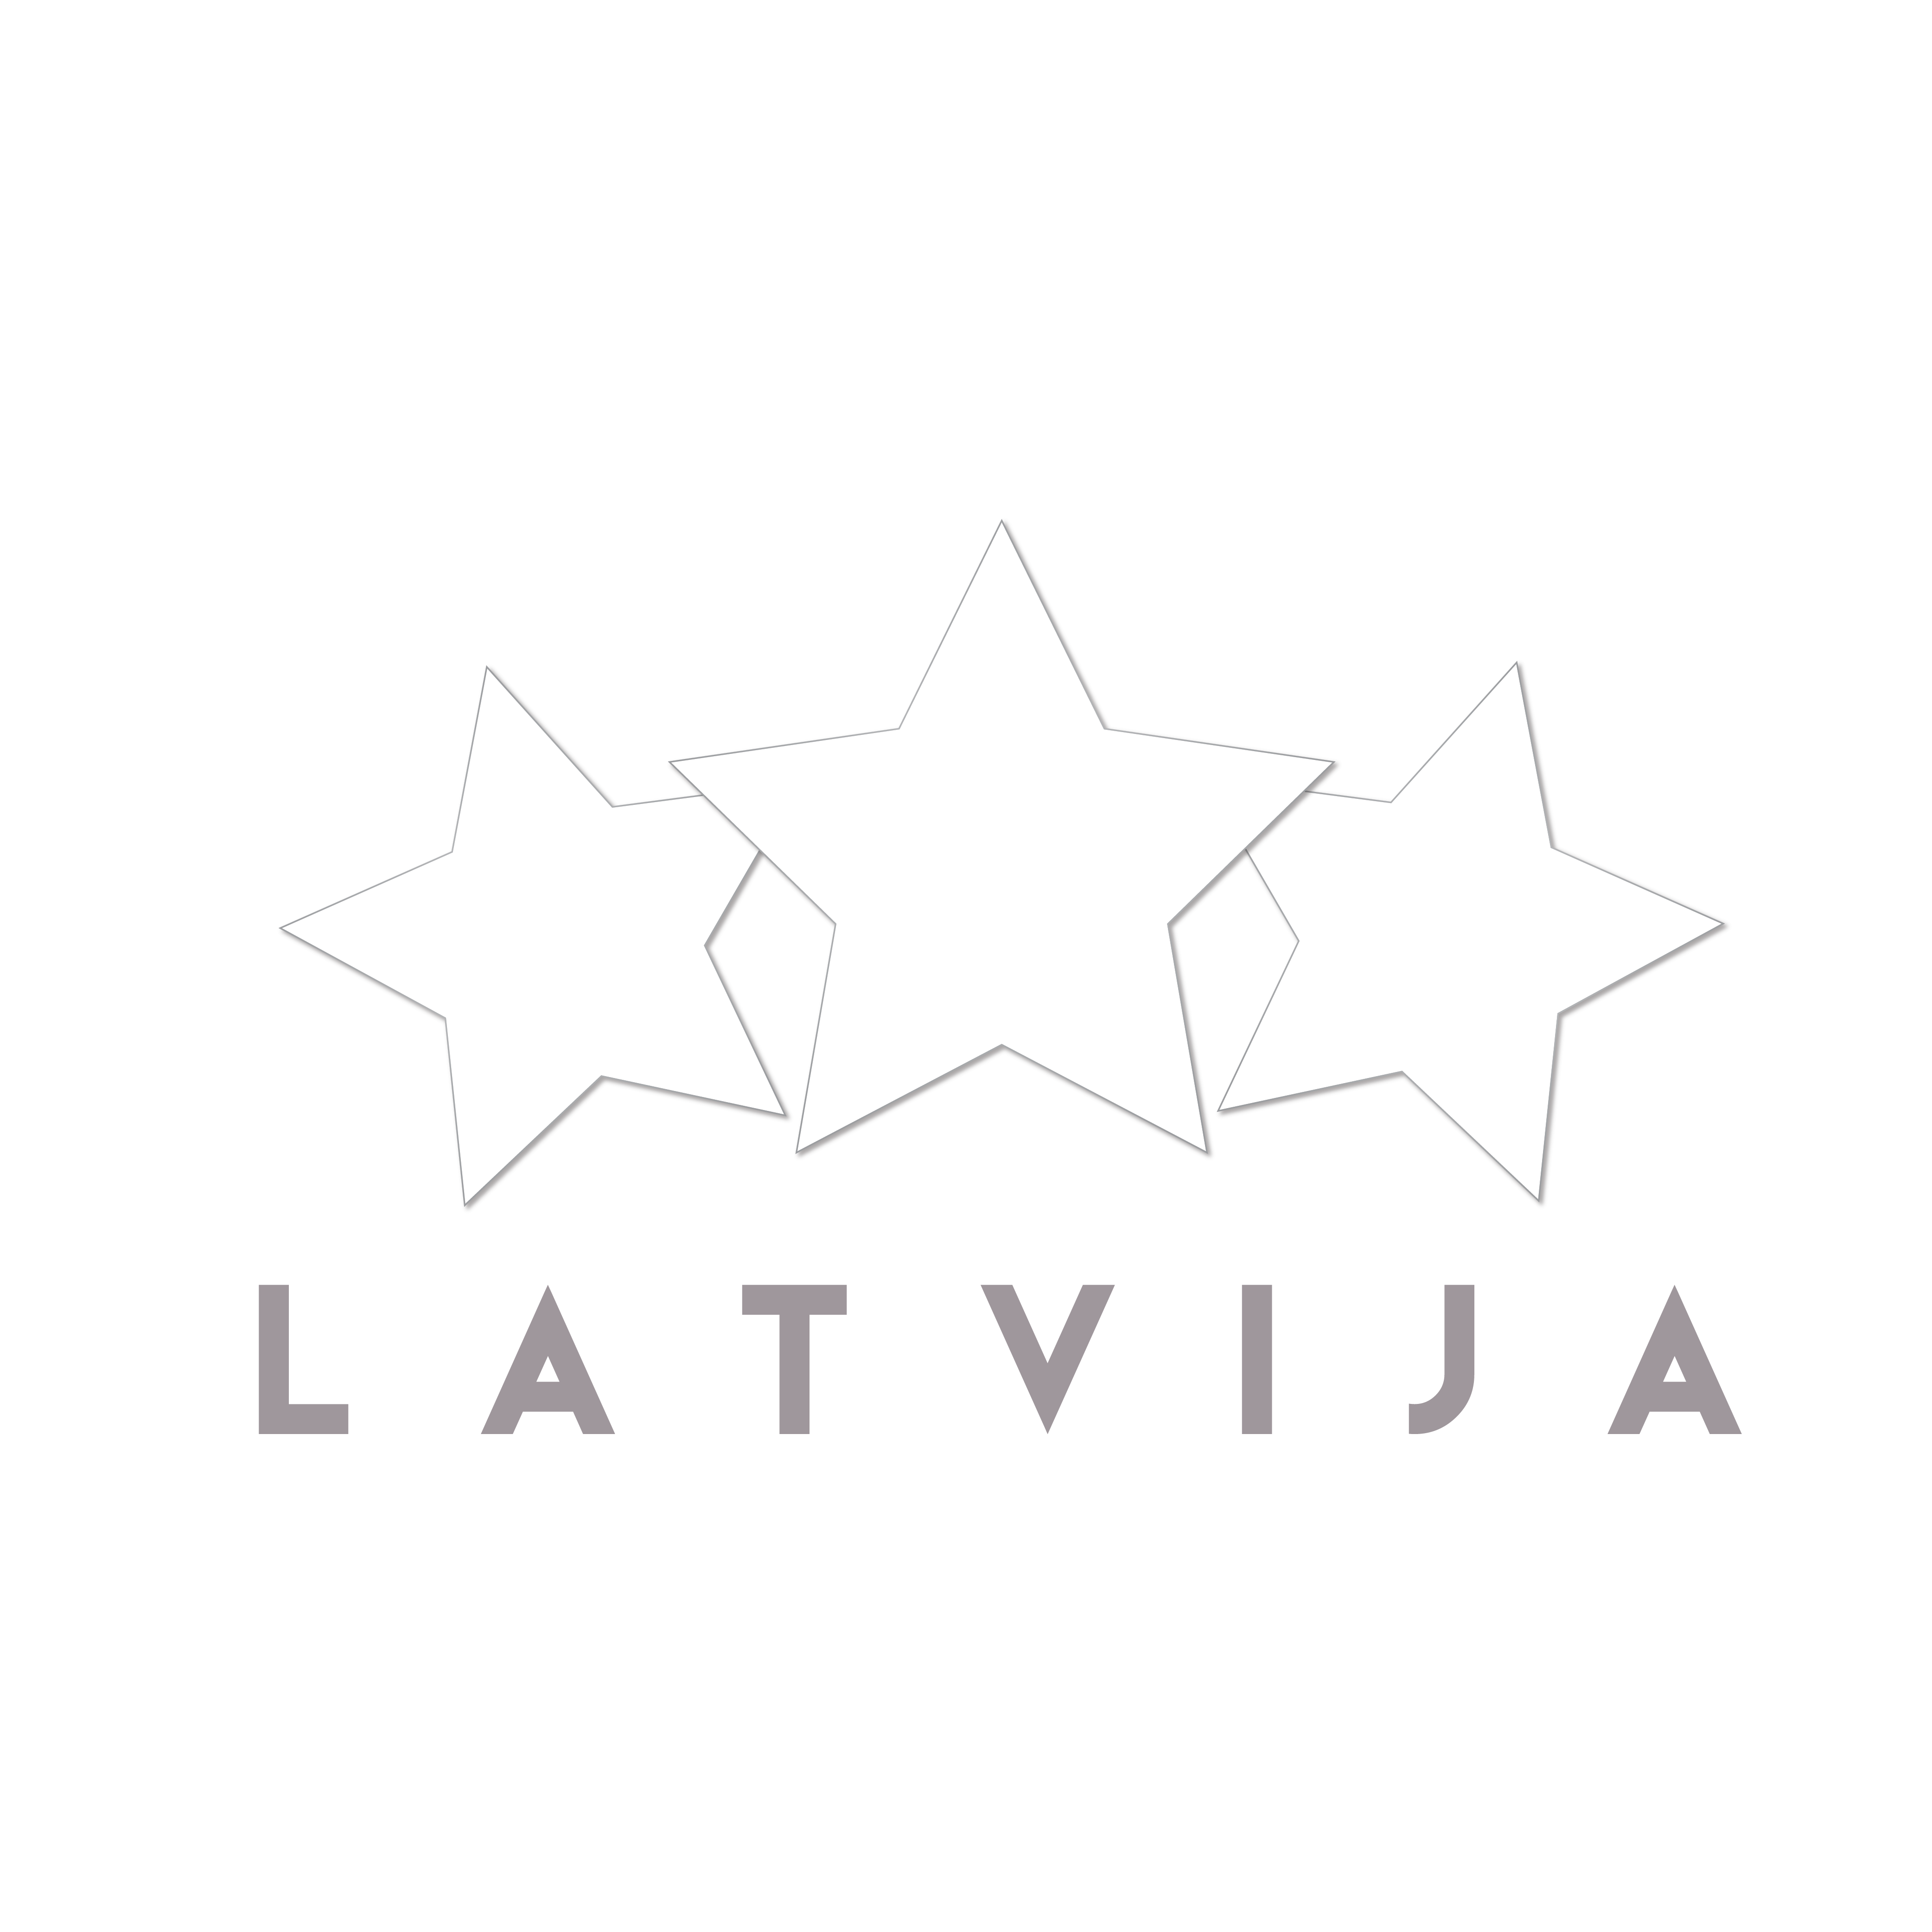 Dakota & Atis Ieviņš – Kurtizāņu ugunskurs | Basketbola zaļumballe Latvija – Lietuva